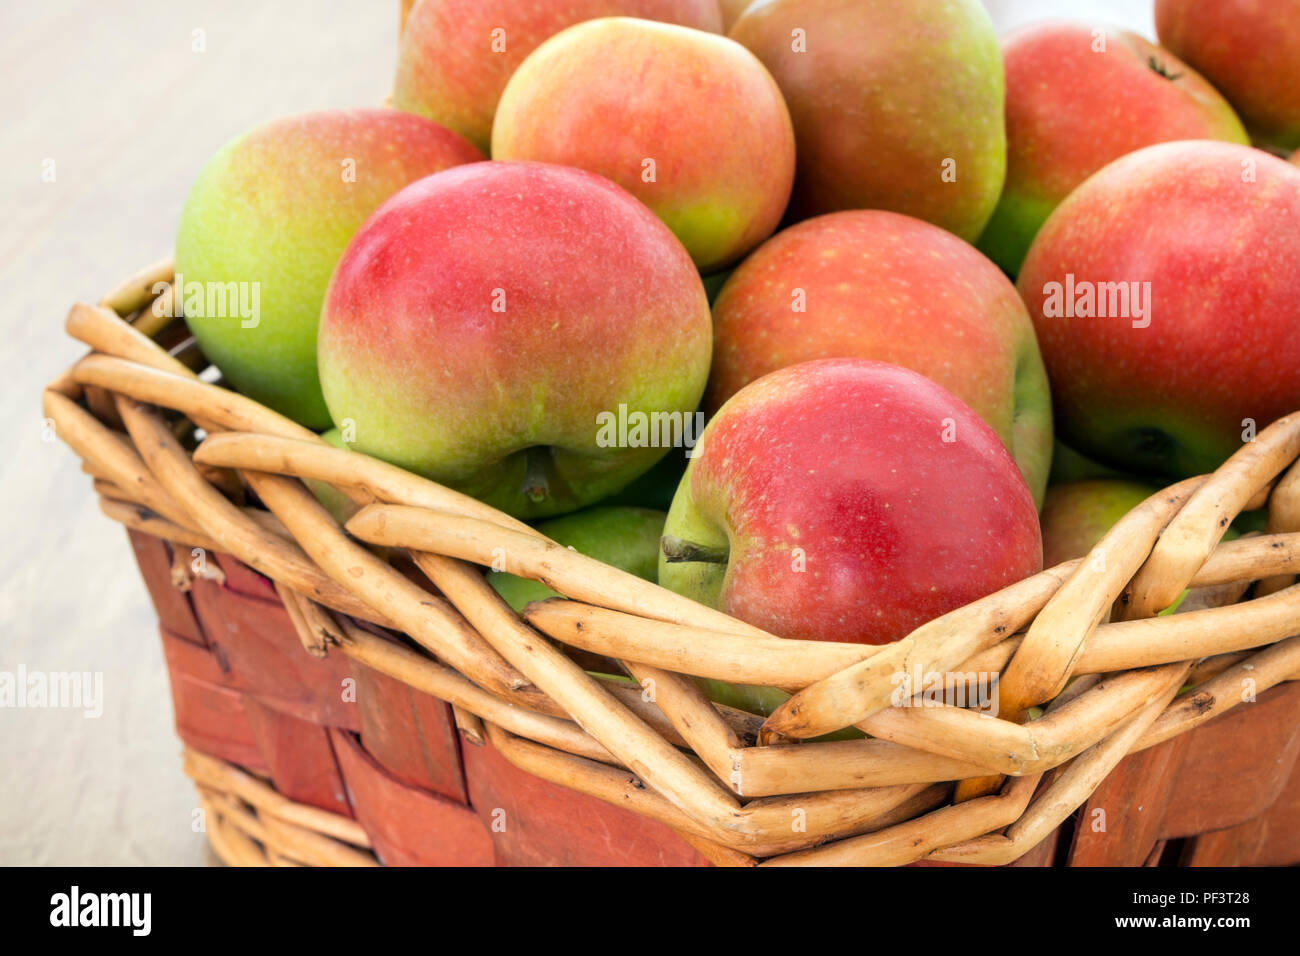 Eine frisch gepflückte Warenkorb der Entdeckung (Malus Domestica) Äpfel. Stockfoto